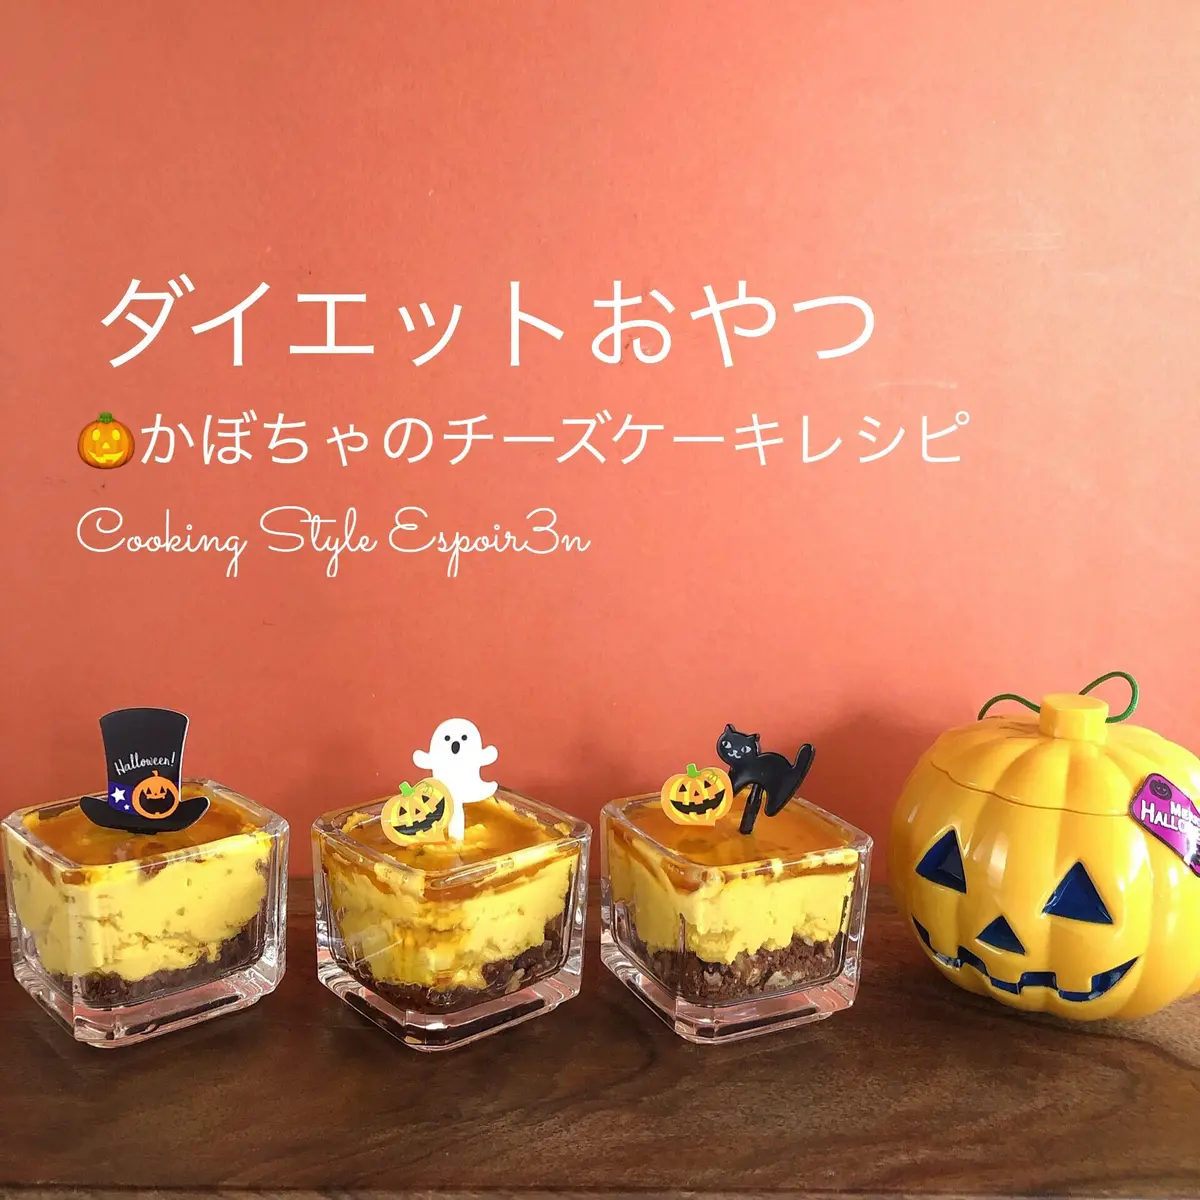 ダイエットおやつ かぼちゃのチーズケーキ のレシピ 作り方 菅野希望 料理教室検索サイト クスパ